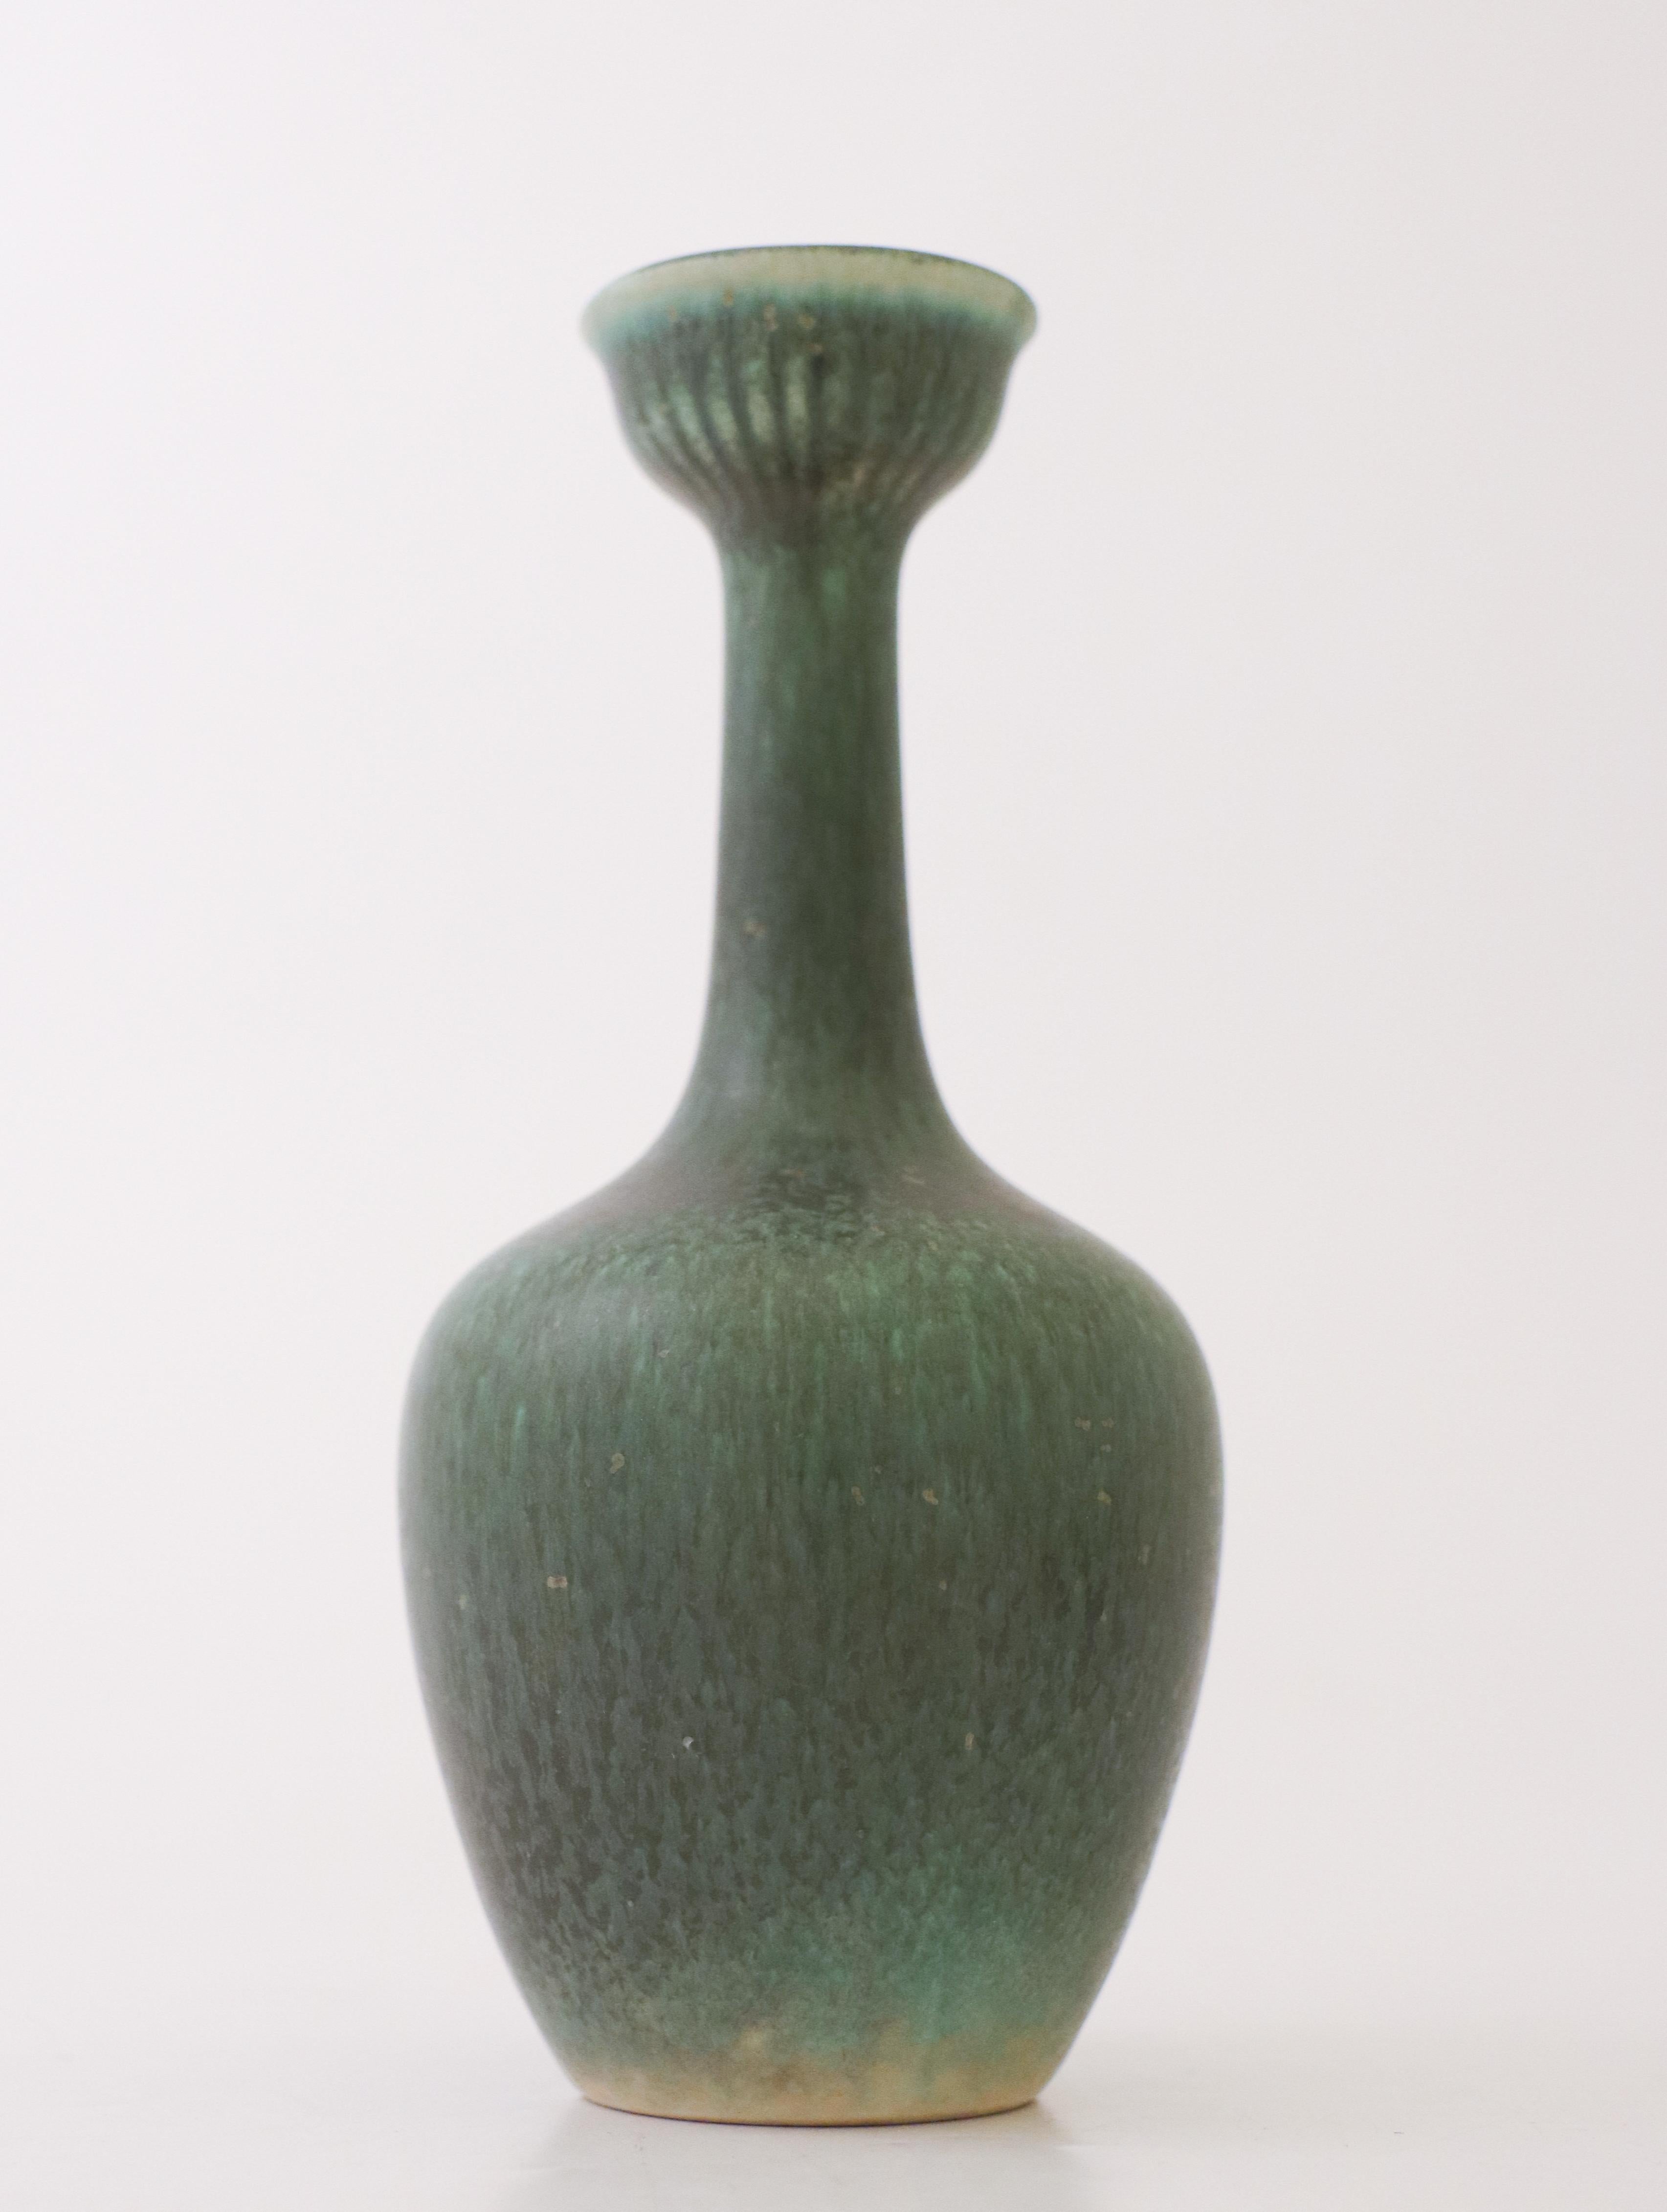 Un vase avec une belle glaçure verte, conçu par Gunnar Nylund à Rörstrand. Le vase mesure 14,5 cm de haut et 7 cm de diamètre. Il est en parfait état et marqué comme étant de première qualité. 

Gunnar Nylund est né à Paris en 1904 de parents